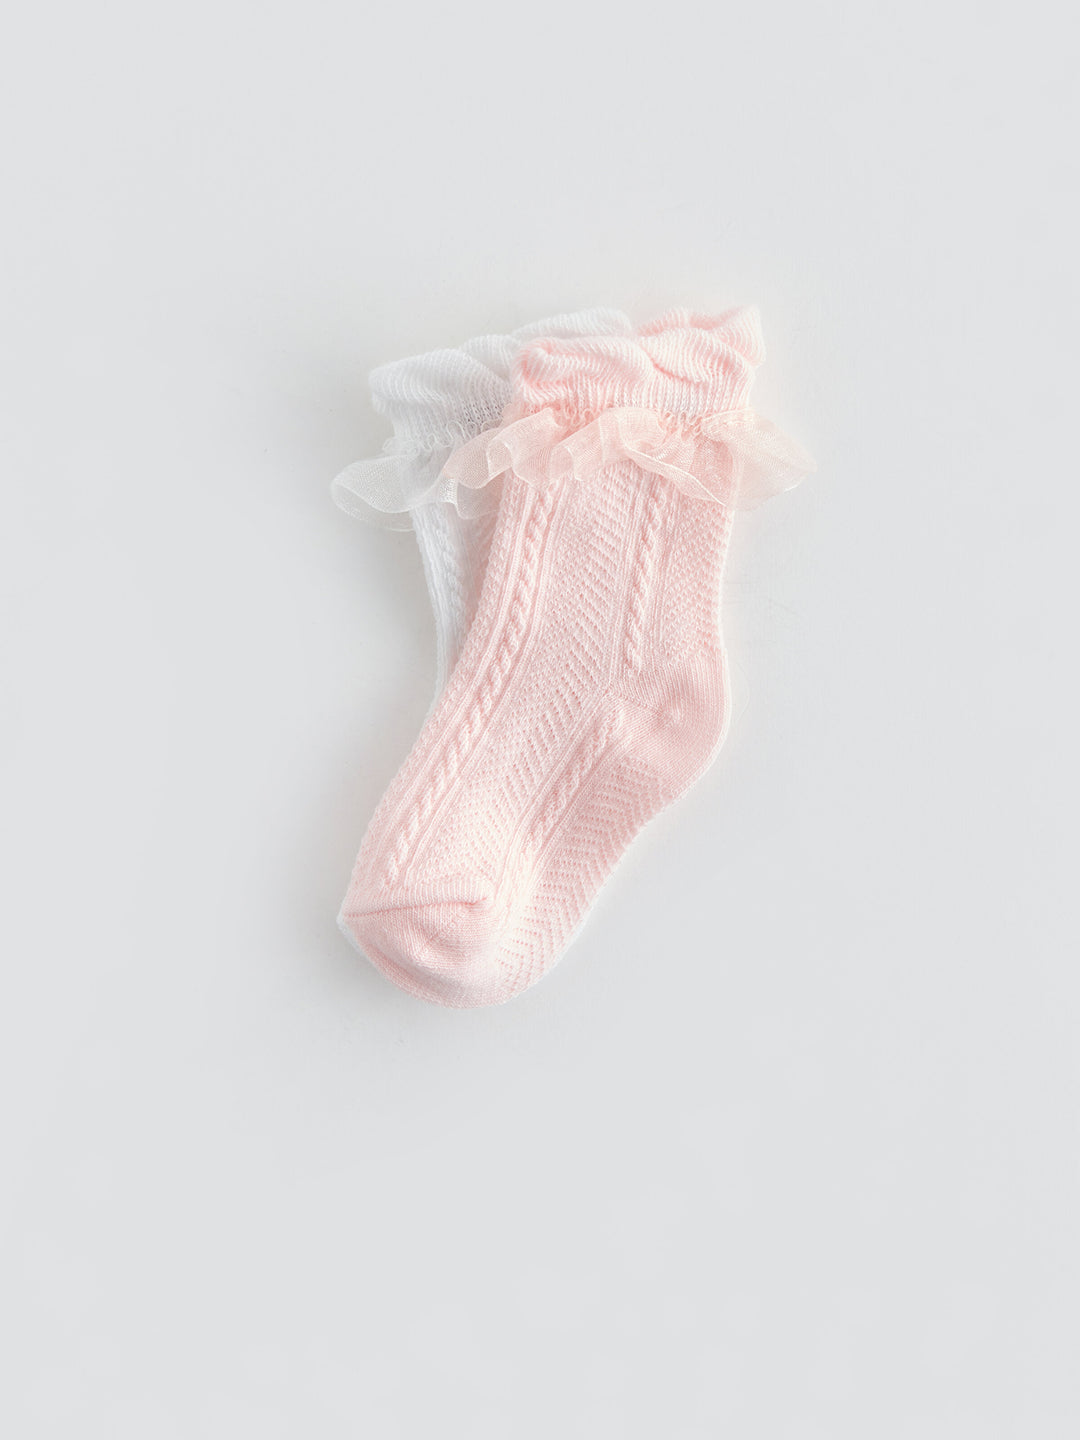 Self Patterned Baby Girls Sock Socks 2 Pack